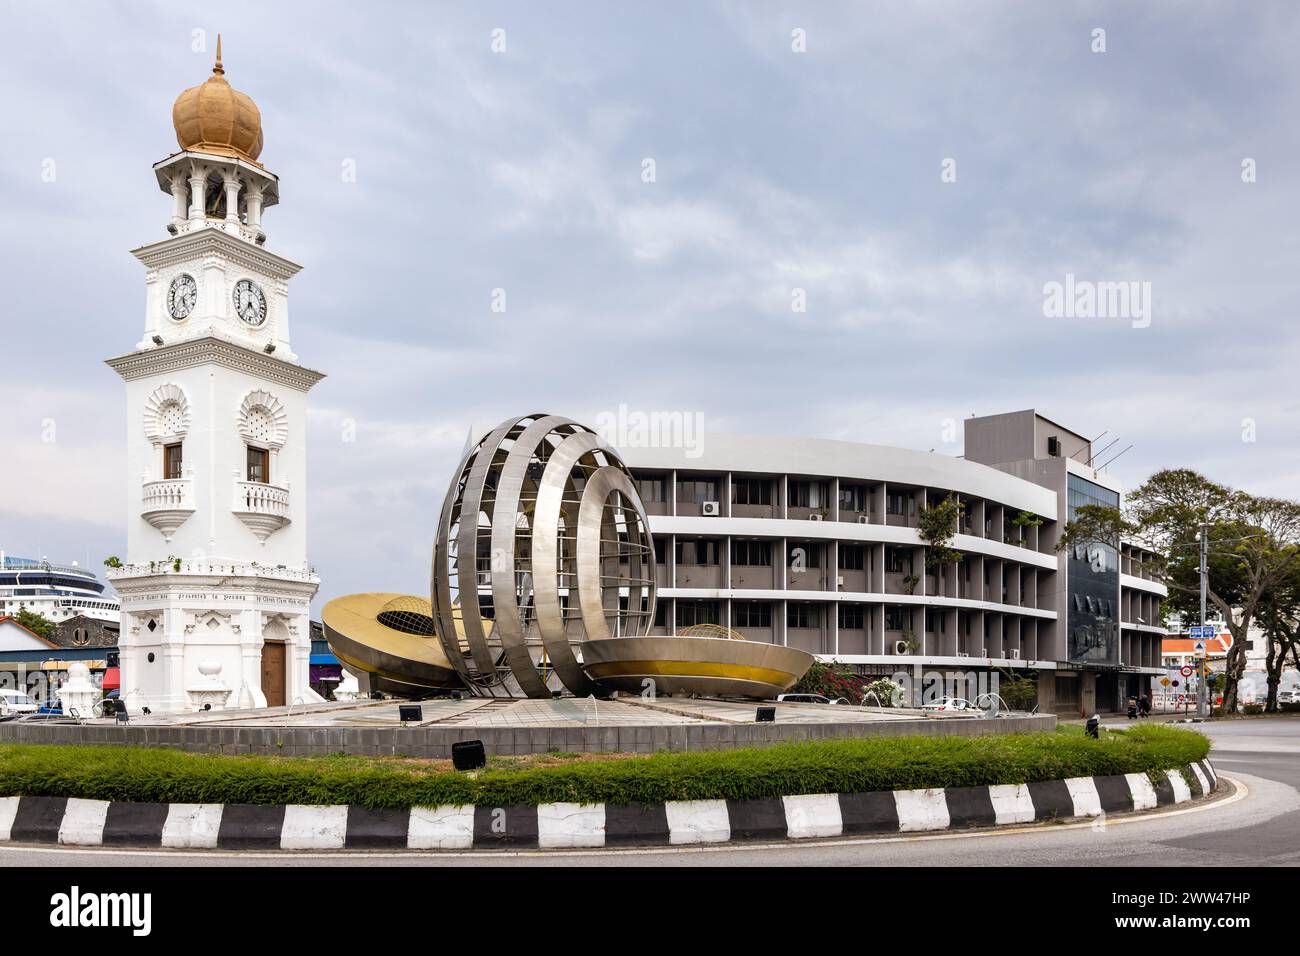 La Queen Victoria Memorial Clock Tower, monument historique commémorant le jubilé de diamant de la reine Victoria, Georgetown, Penang, Malaisie Banque D'Images